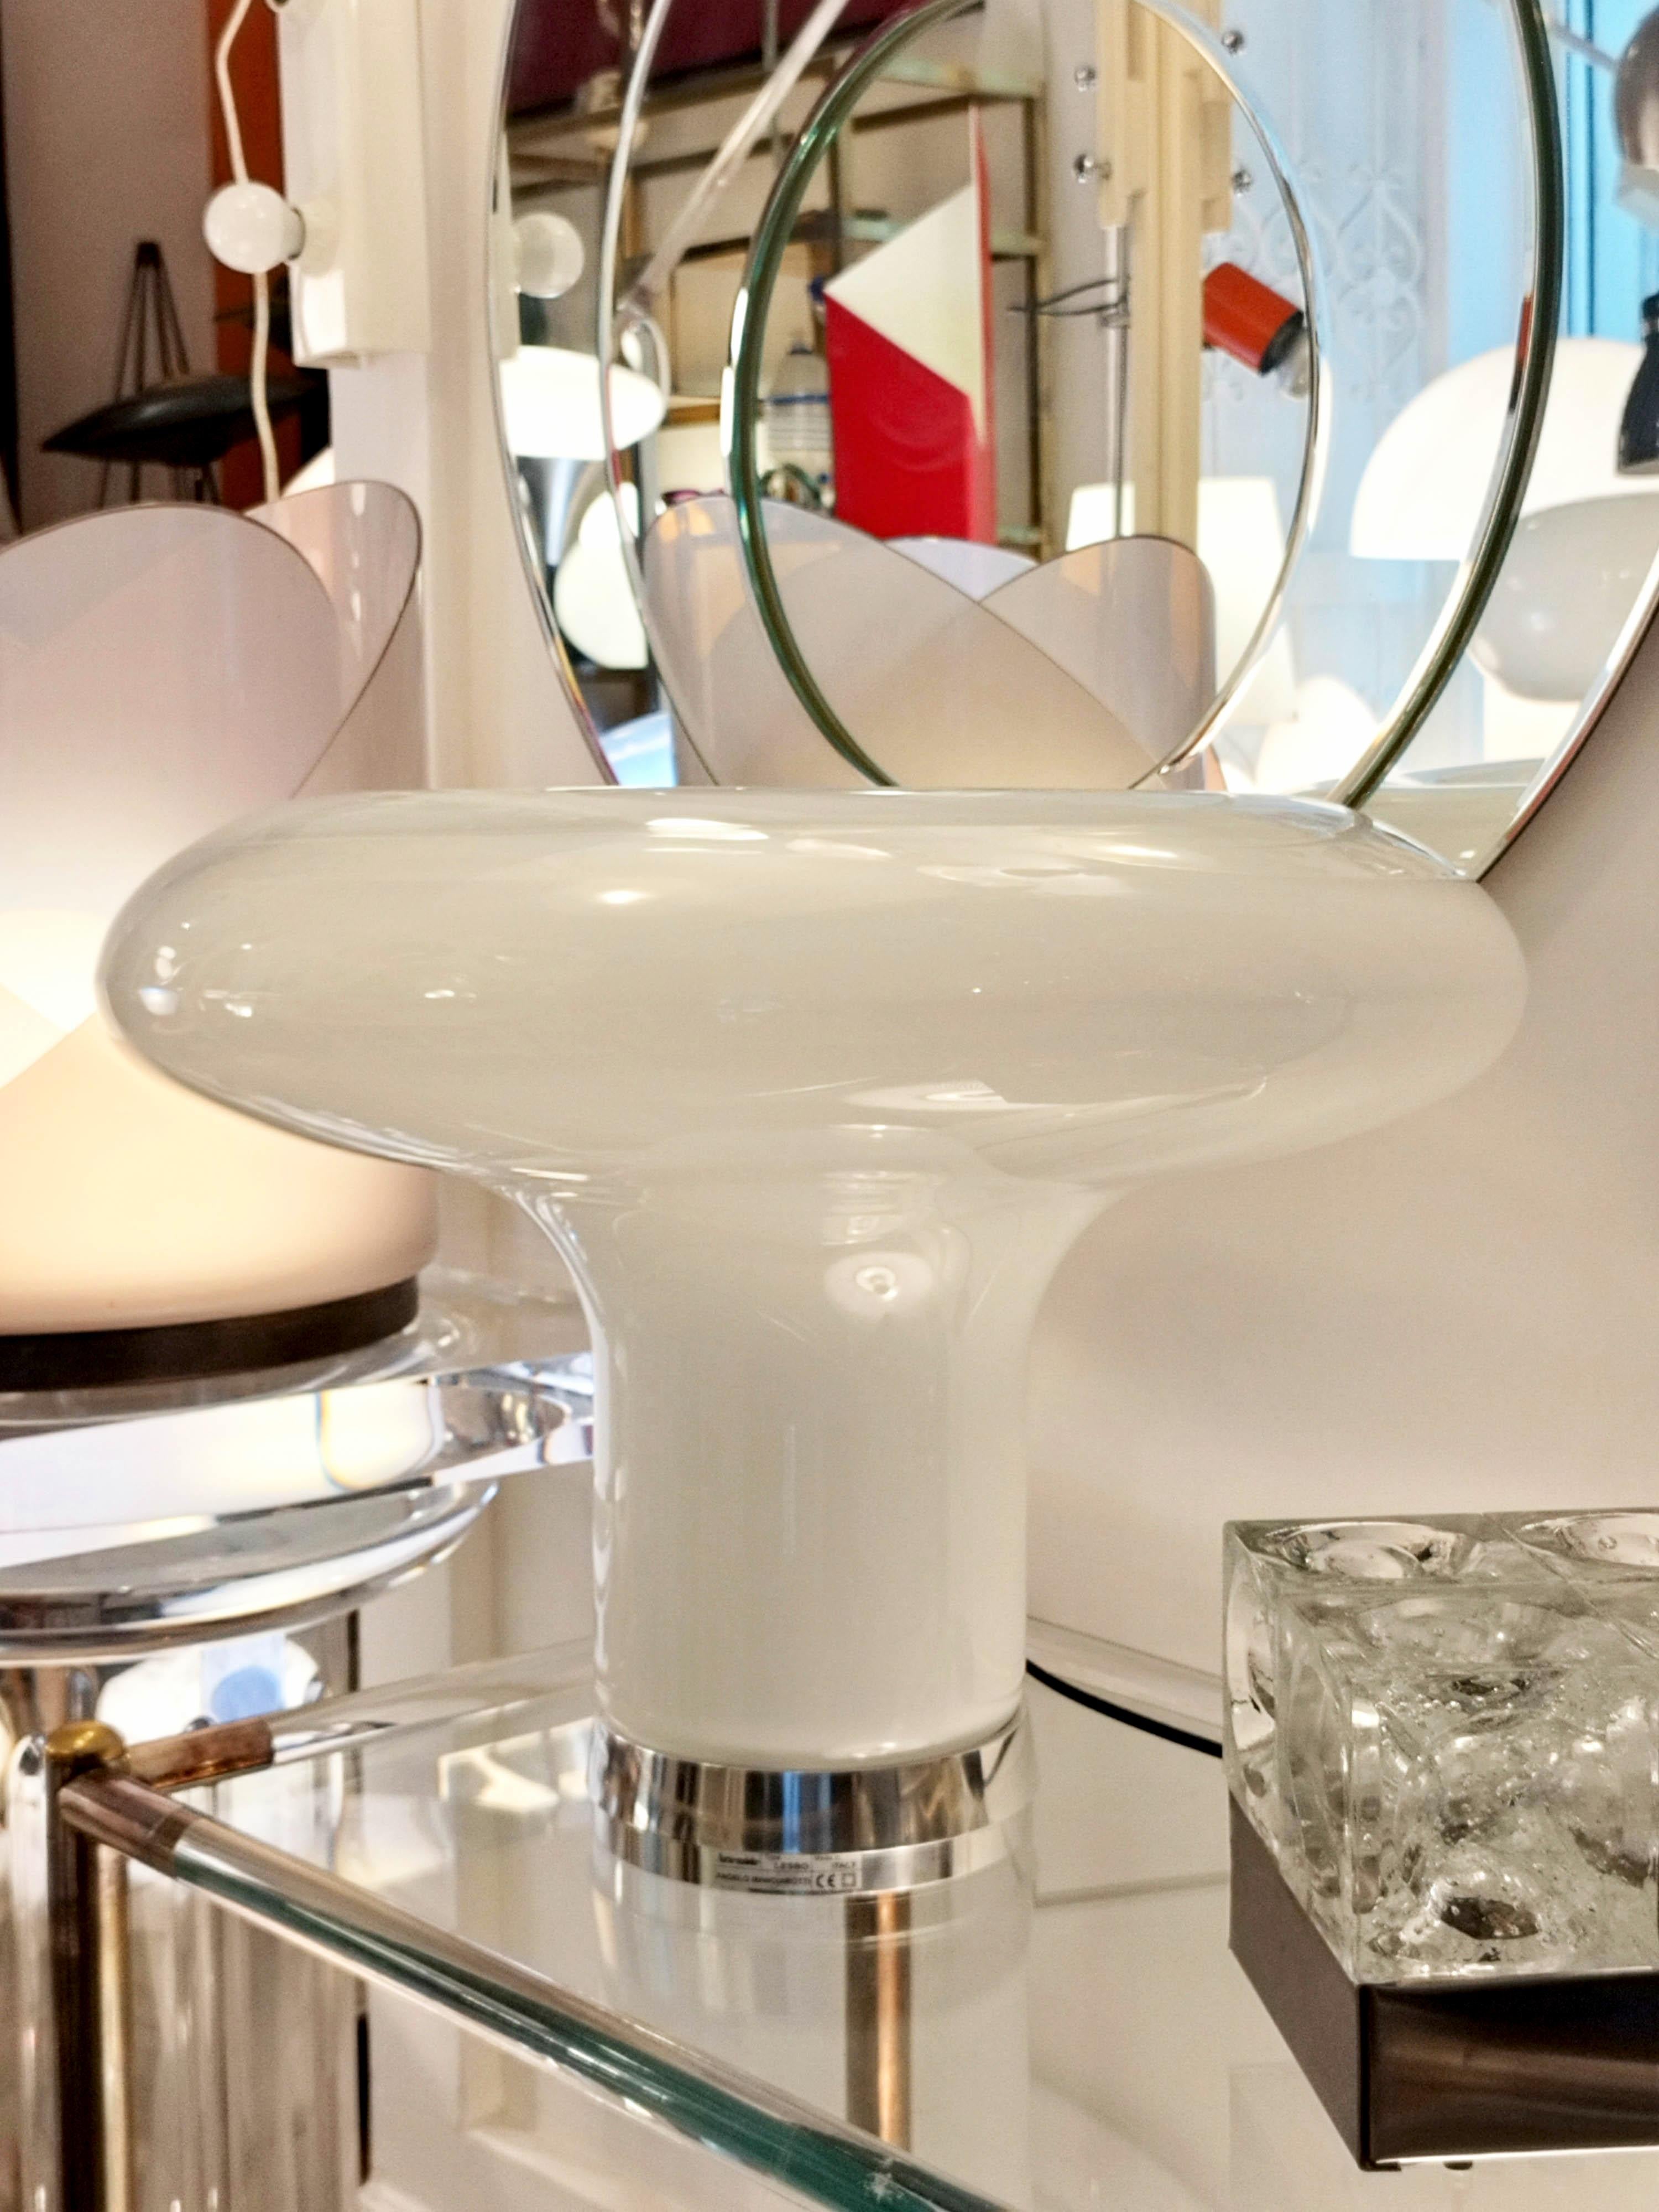 Lesbo Tischleuchte, eine der kultigsten Tischleuchten. Die 1967 von Angelo Mangiarotti entworfene Leuchte ist nach wie vor eine Ikone des Stils und der Raffinesse, mit einem Korpus und einem Schirm aus mundgeblasenem, geräuchertem Murano-Glas und